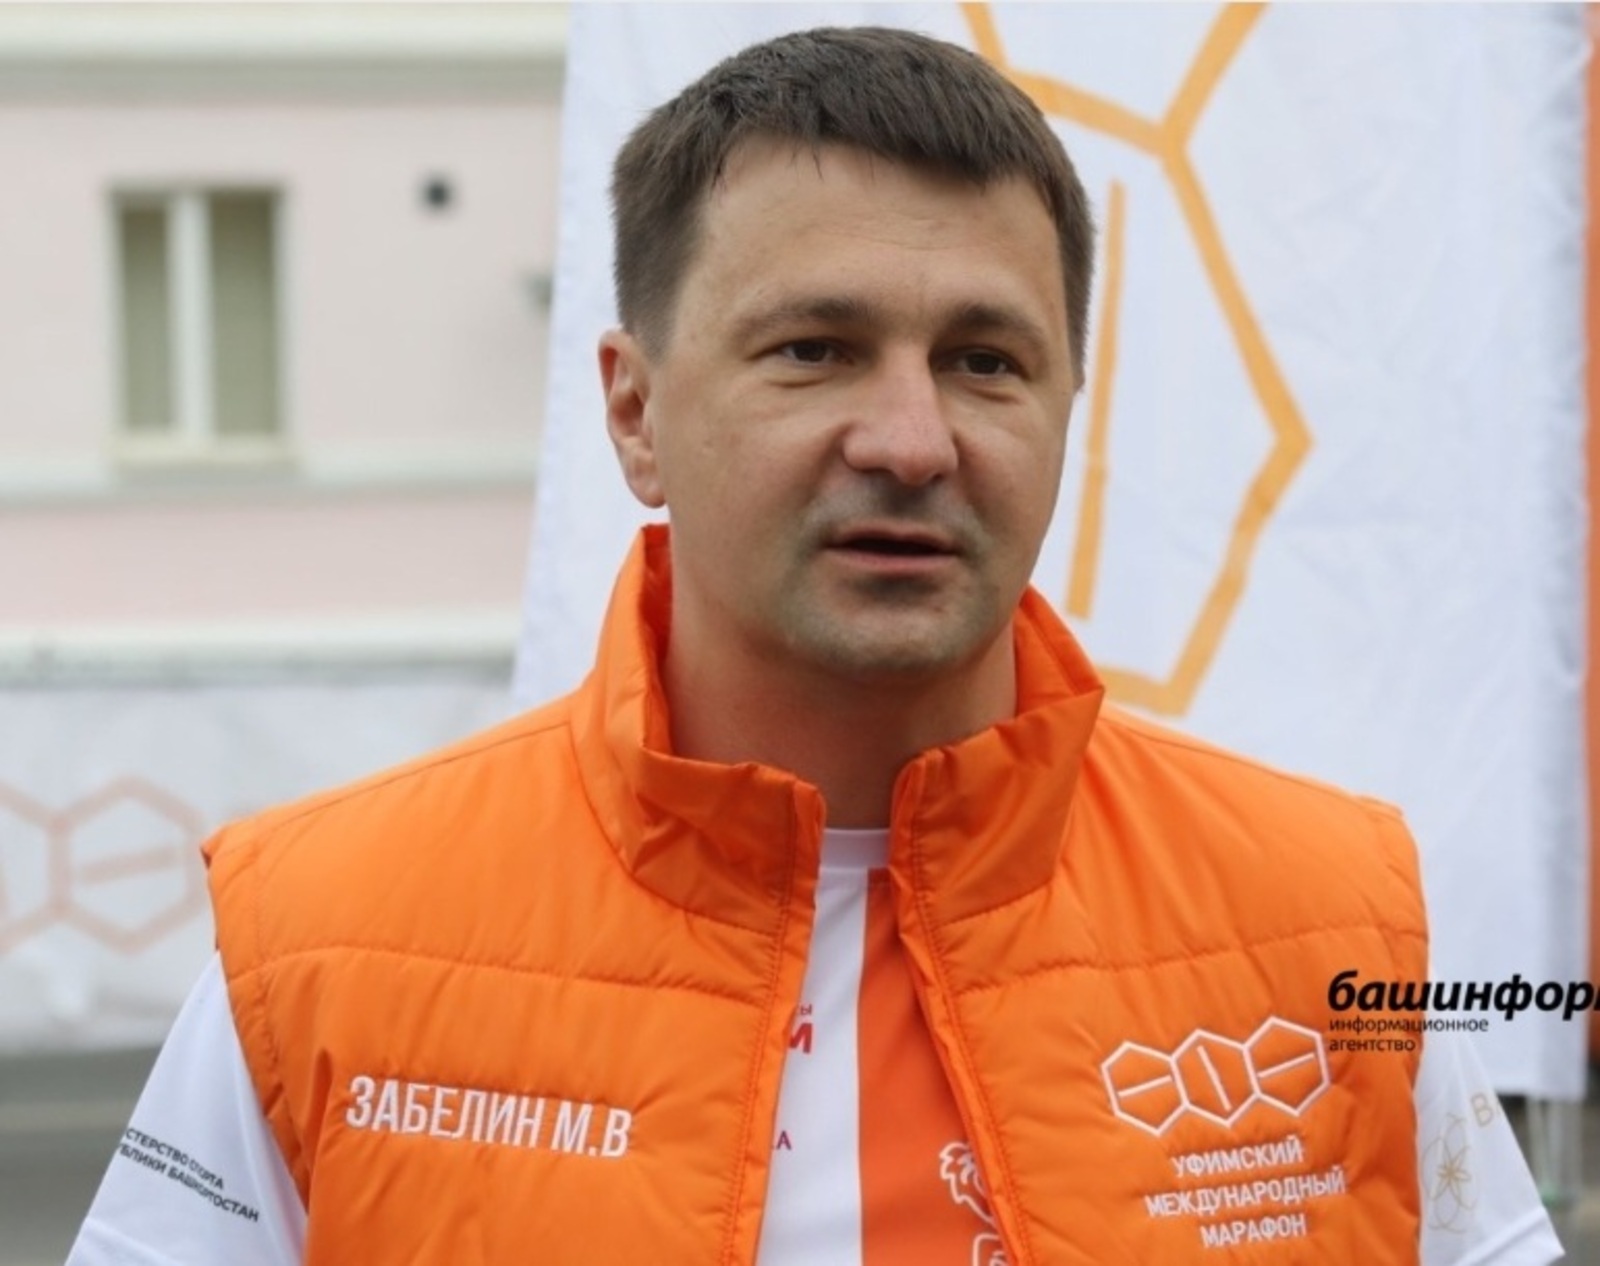 Руководитель администрации Главы Башкирии пробежал международный марафон